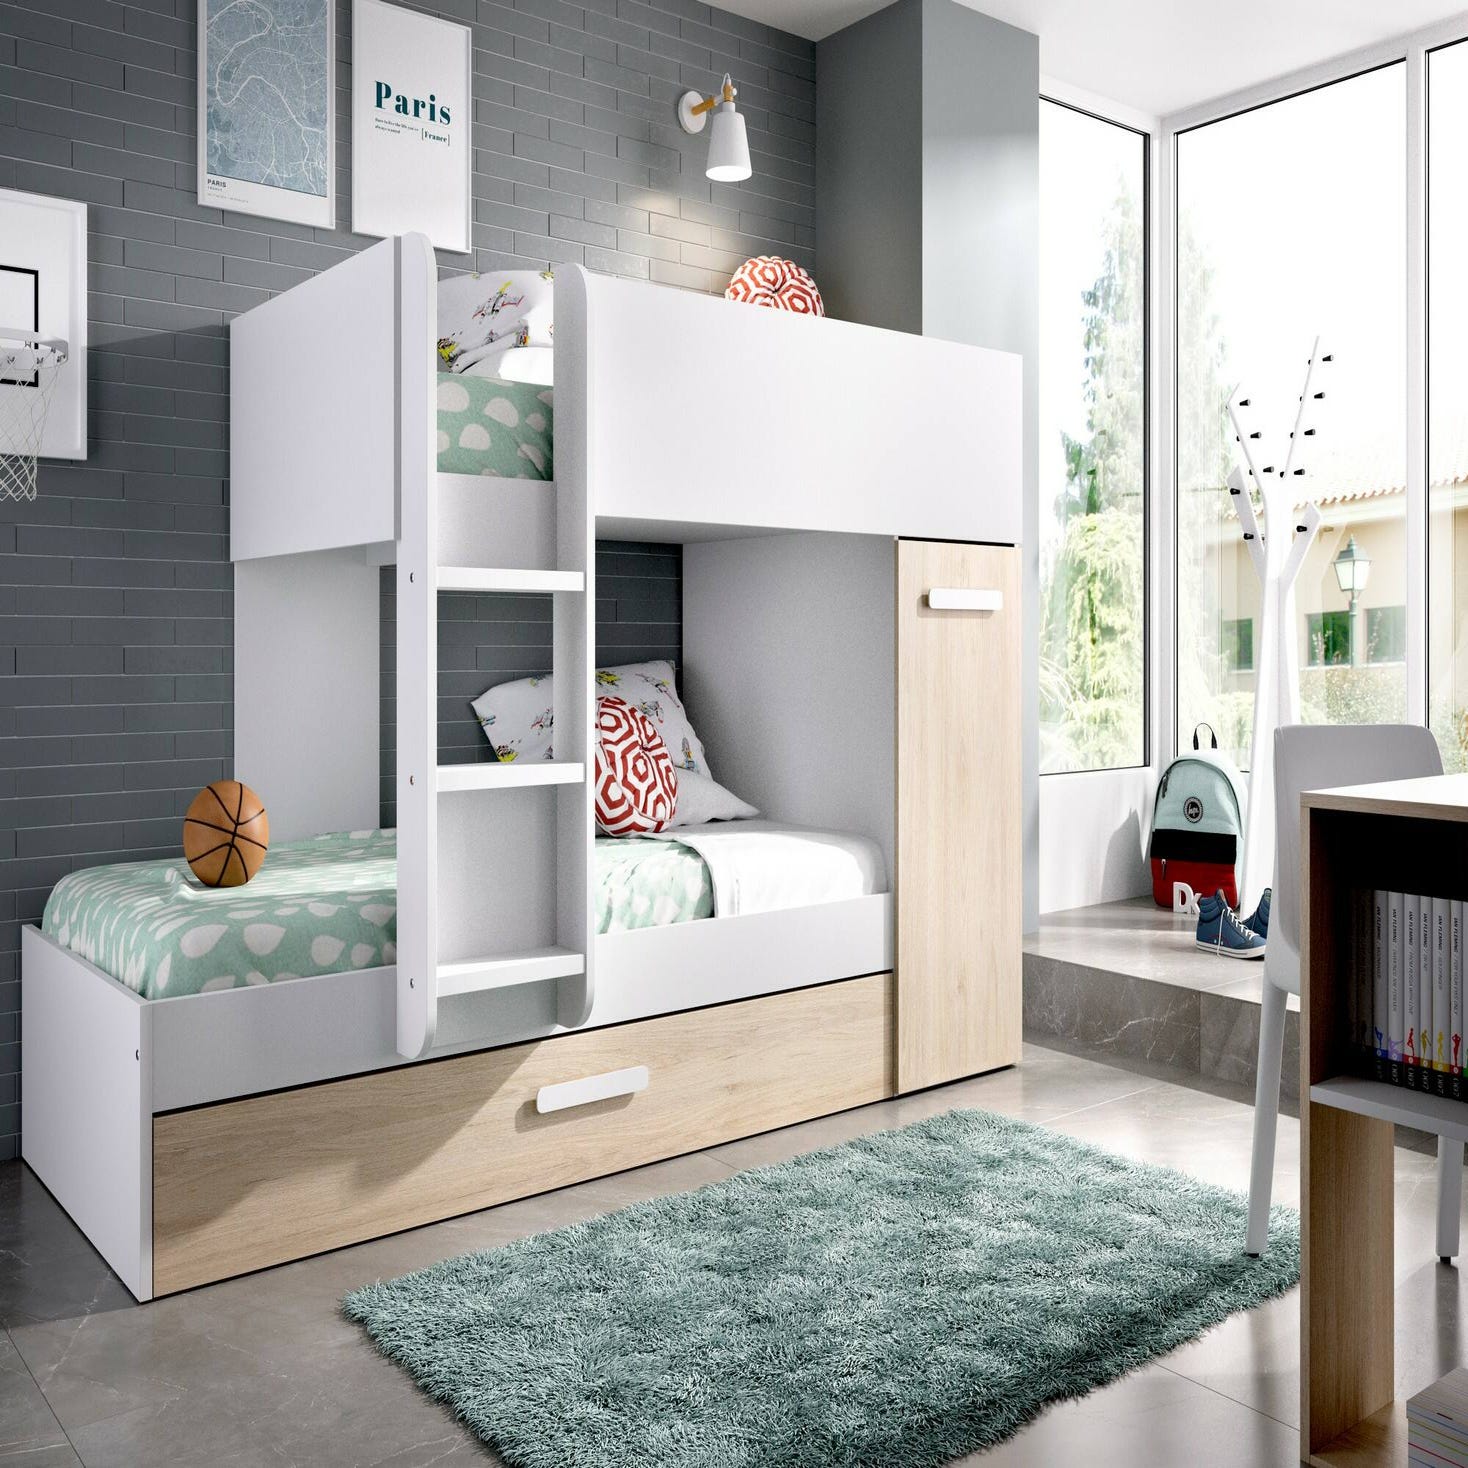 Armario-casita y litera blanca en habitación infantil 